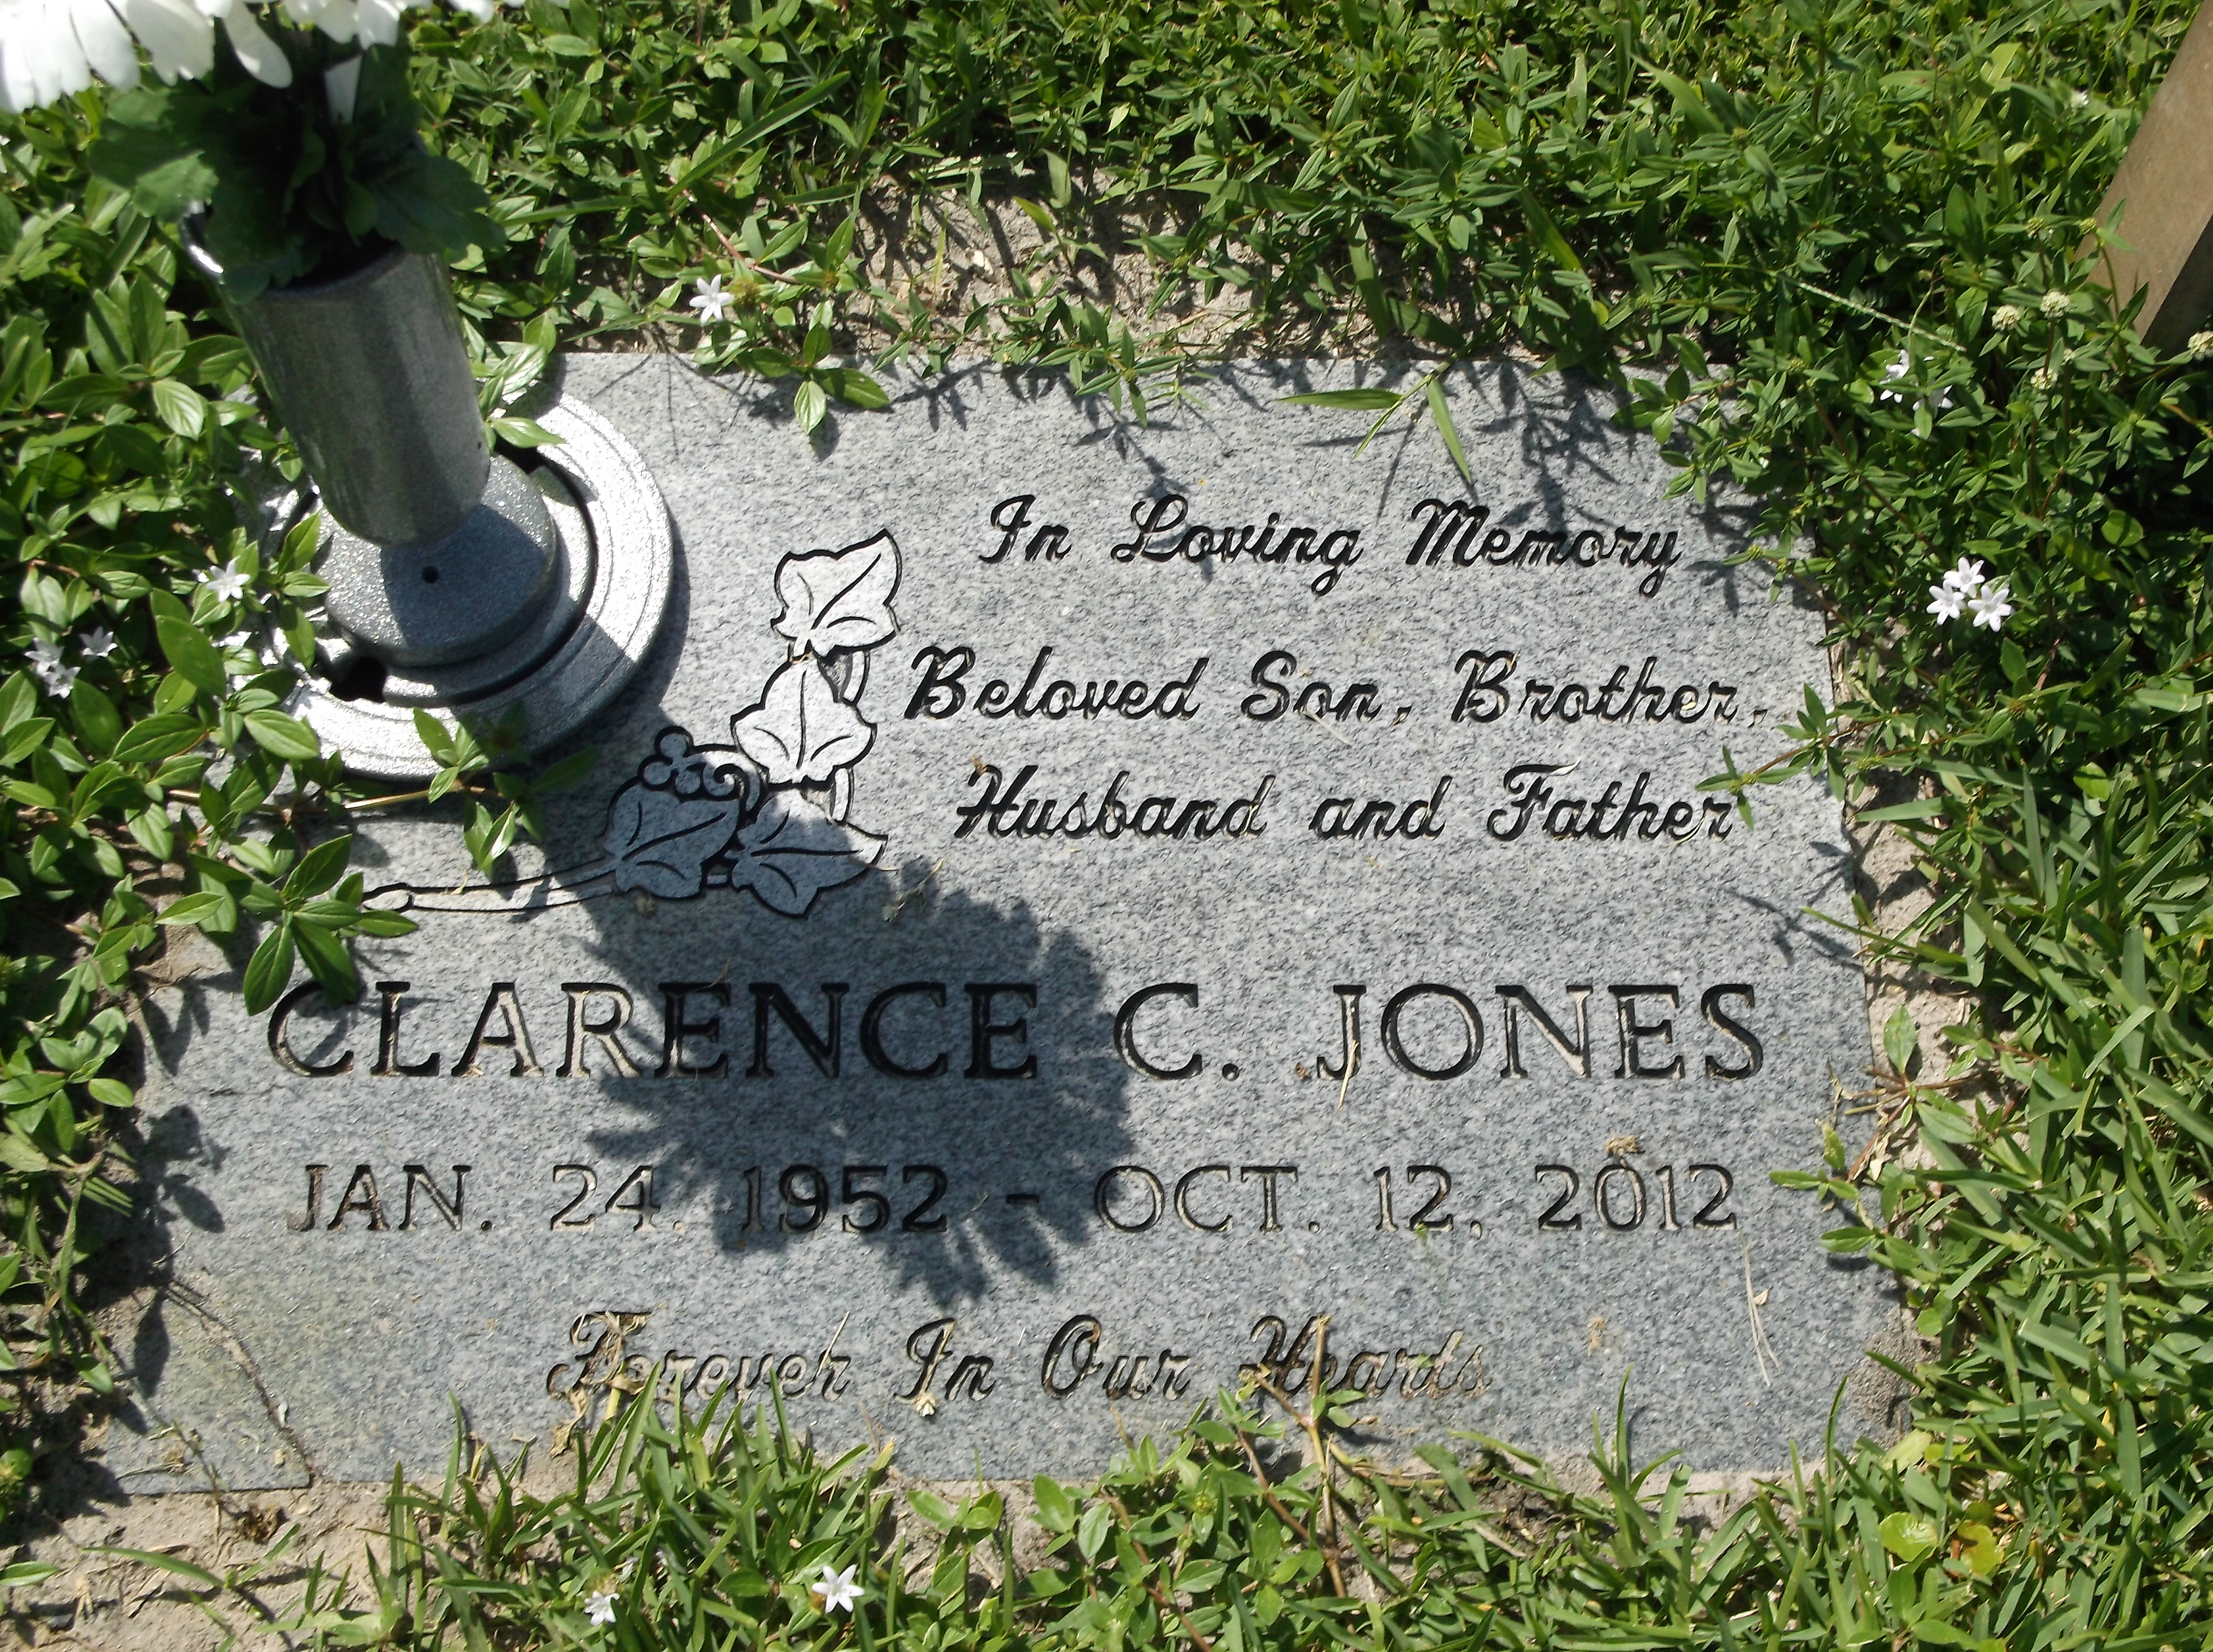 Clarence C Jones